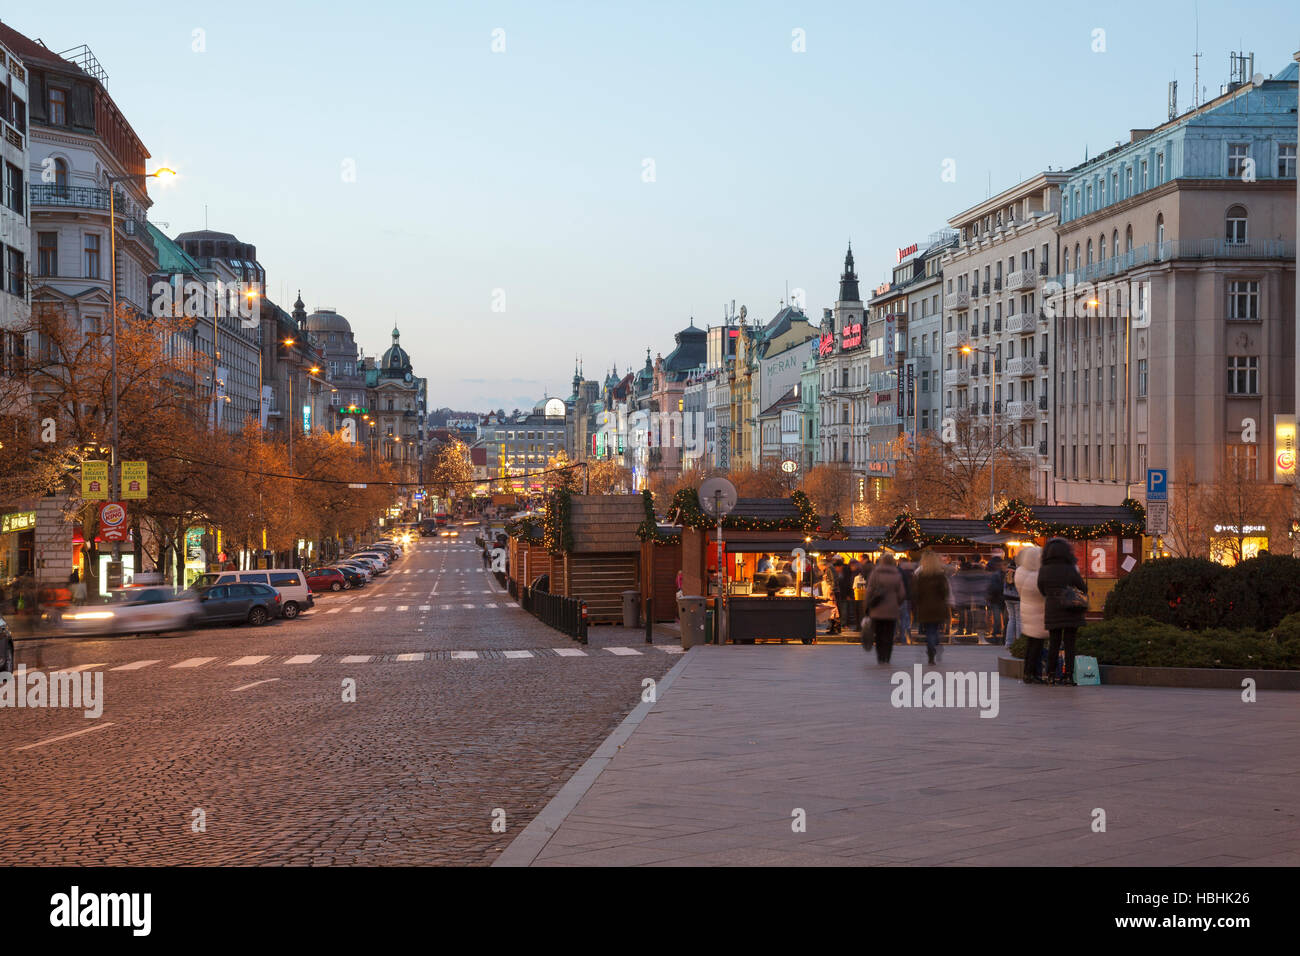 Wenceslas Square at dusk, Prague, Czech Republic Stock Photo